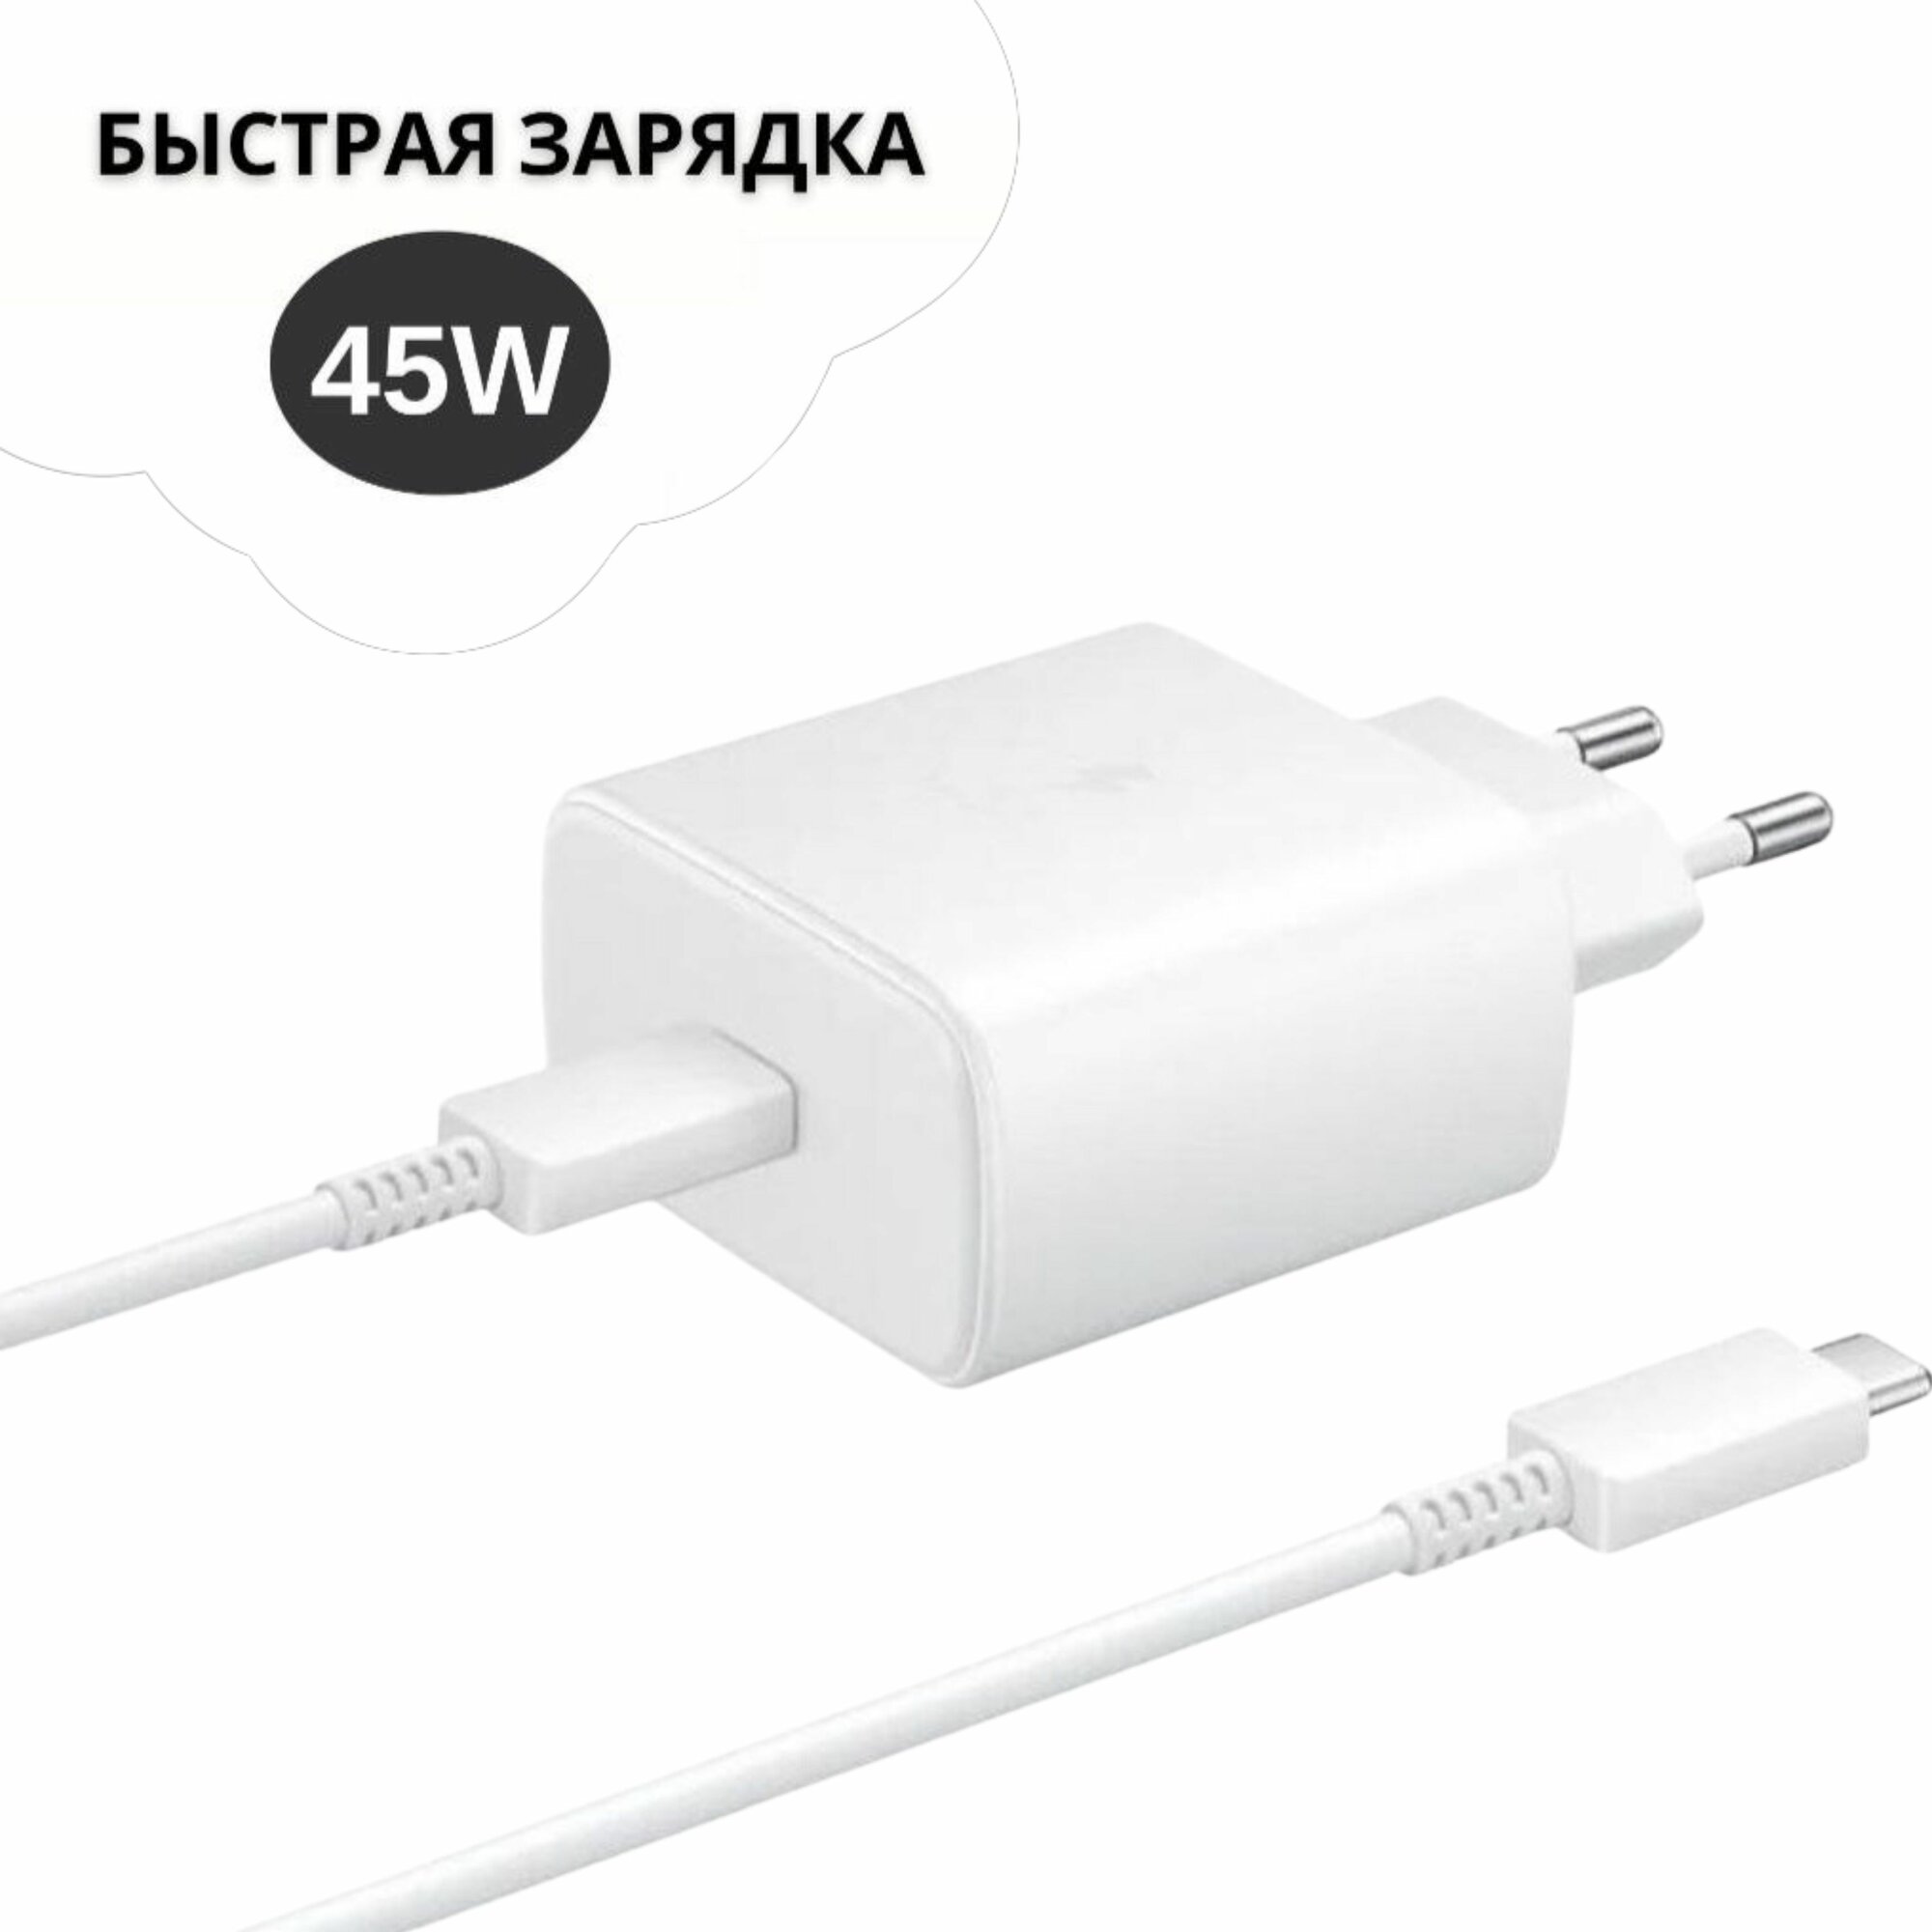 Сетевое зарядное устройство Для Samsung 45W + кабель USB Type-C, Белый